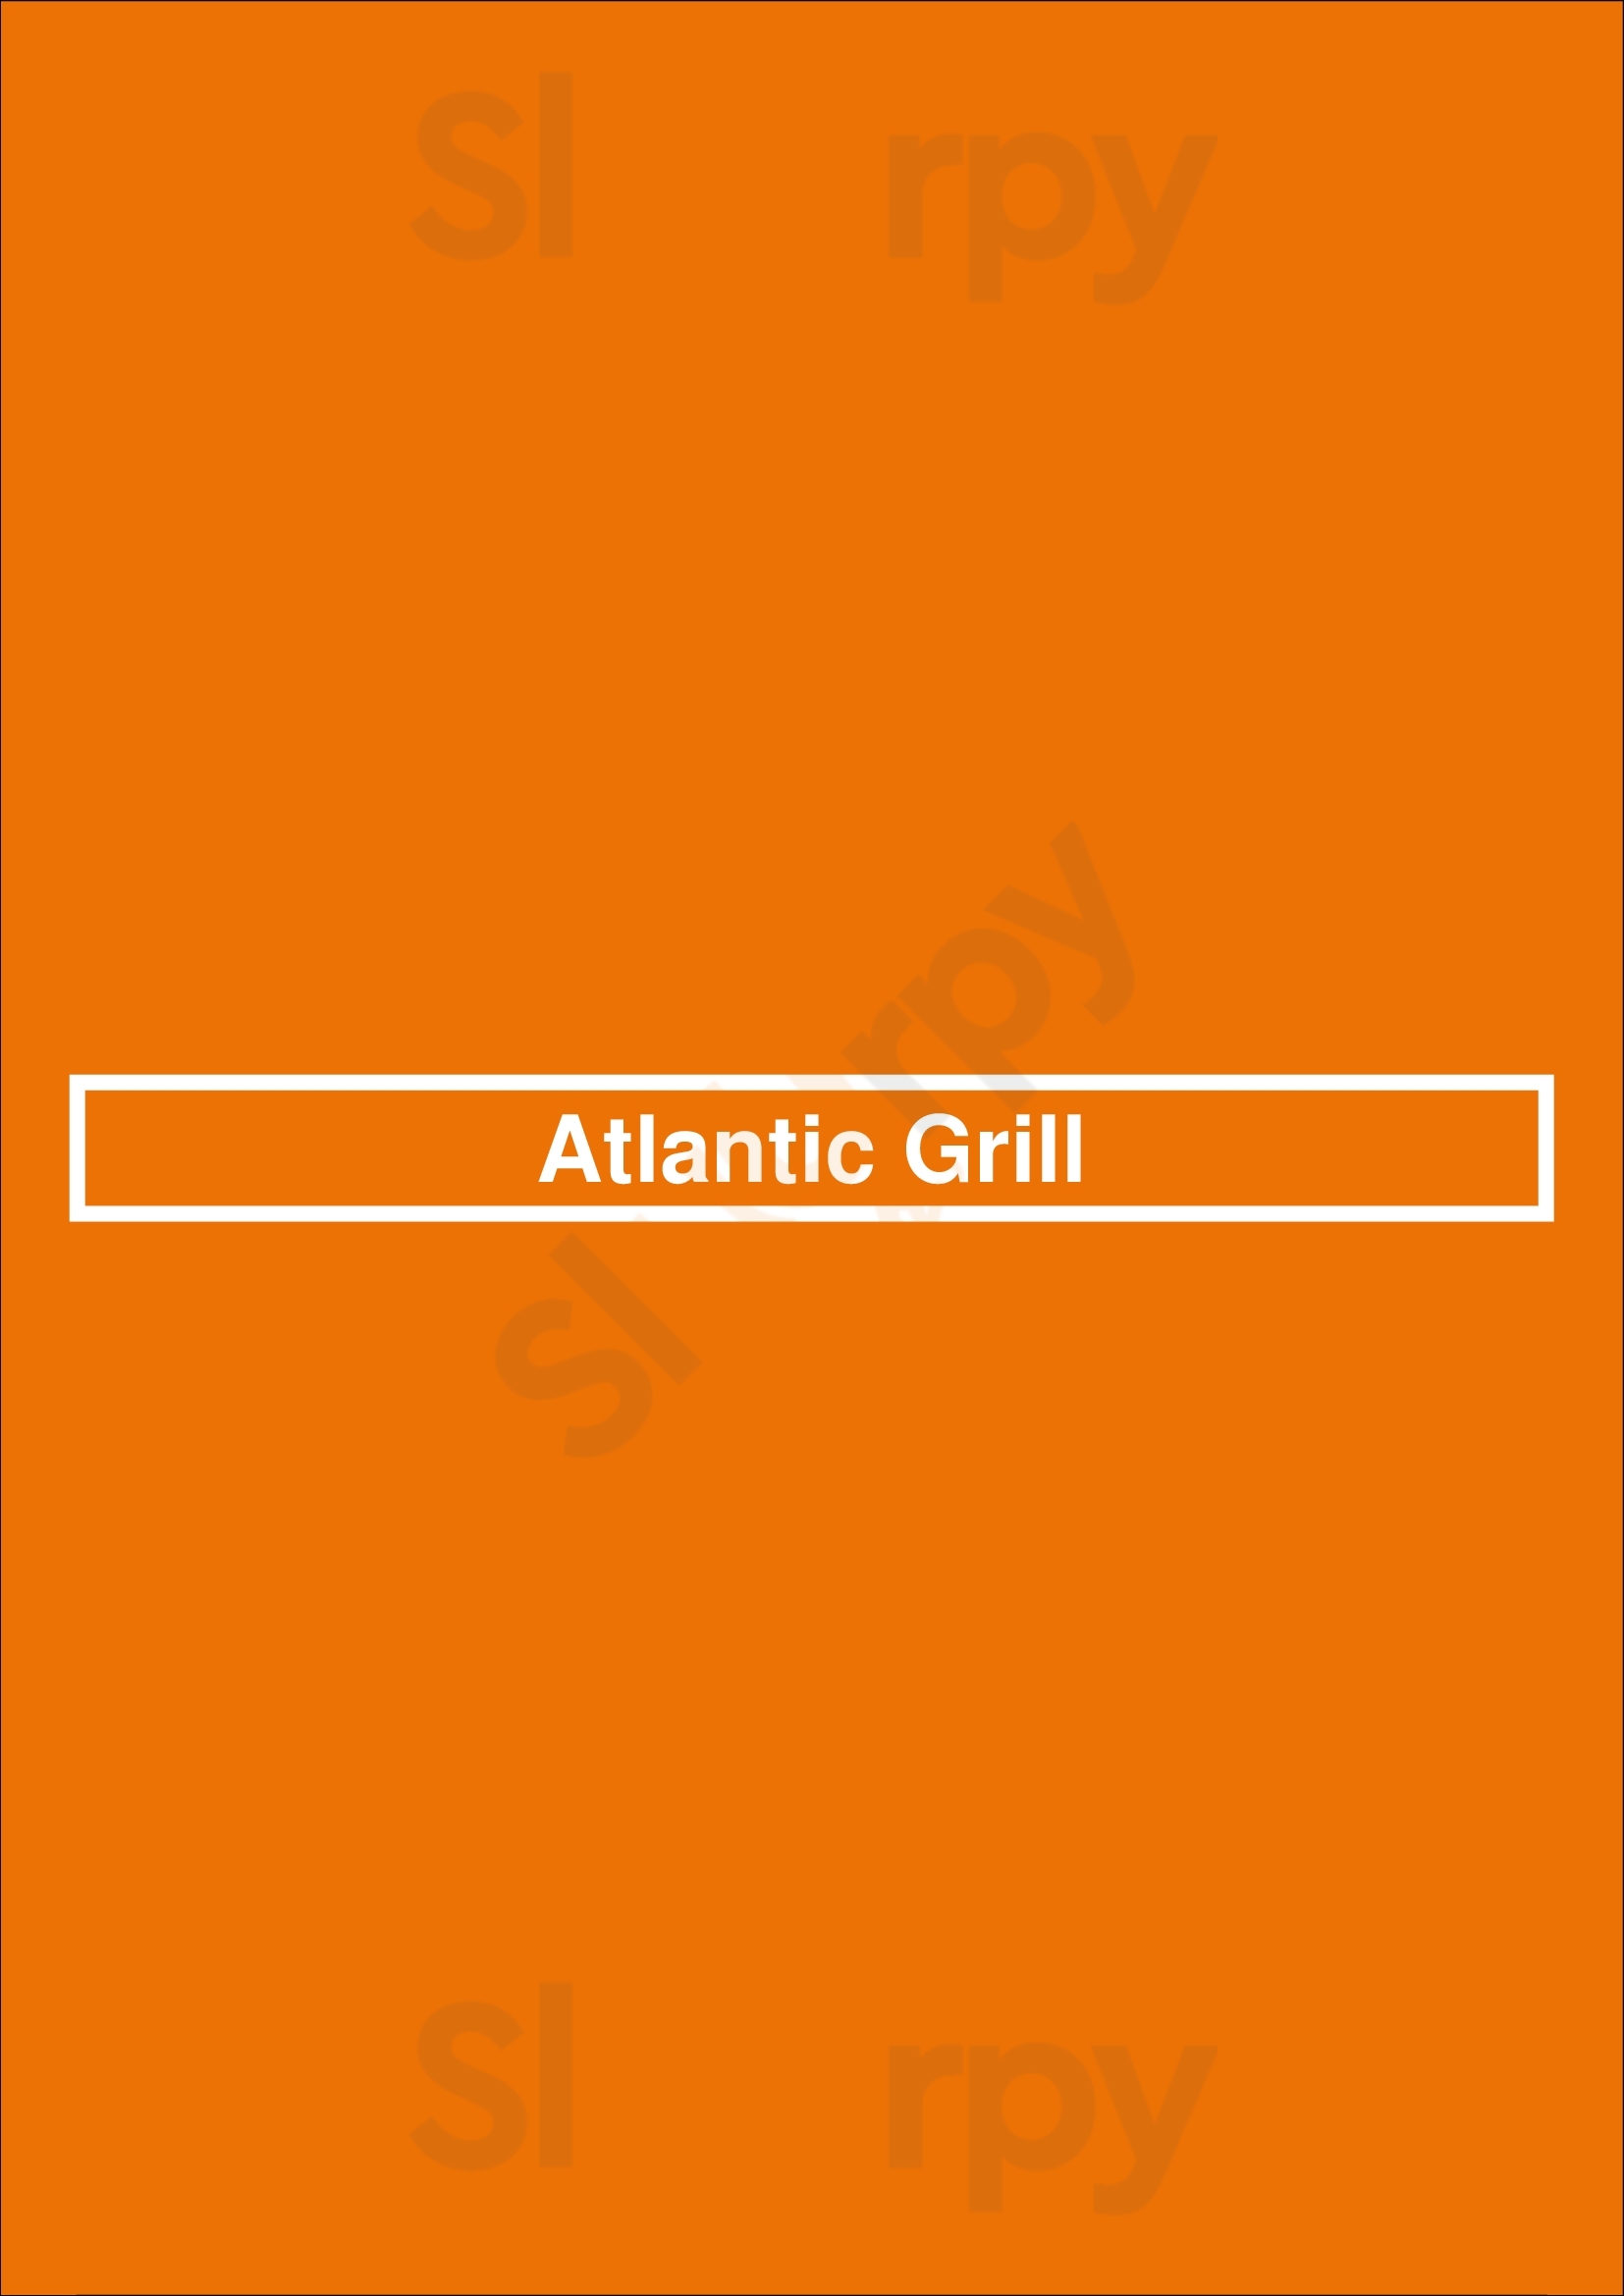 Atlantic Grill New York City Menu - 1